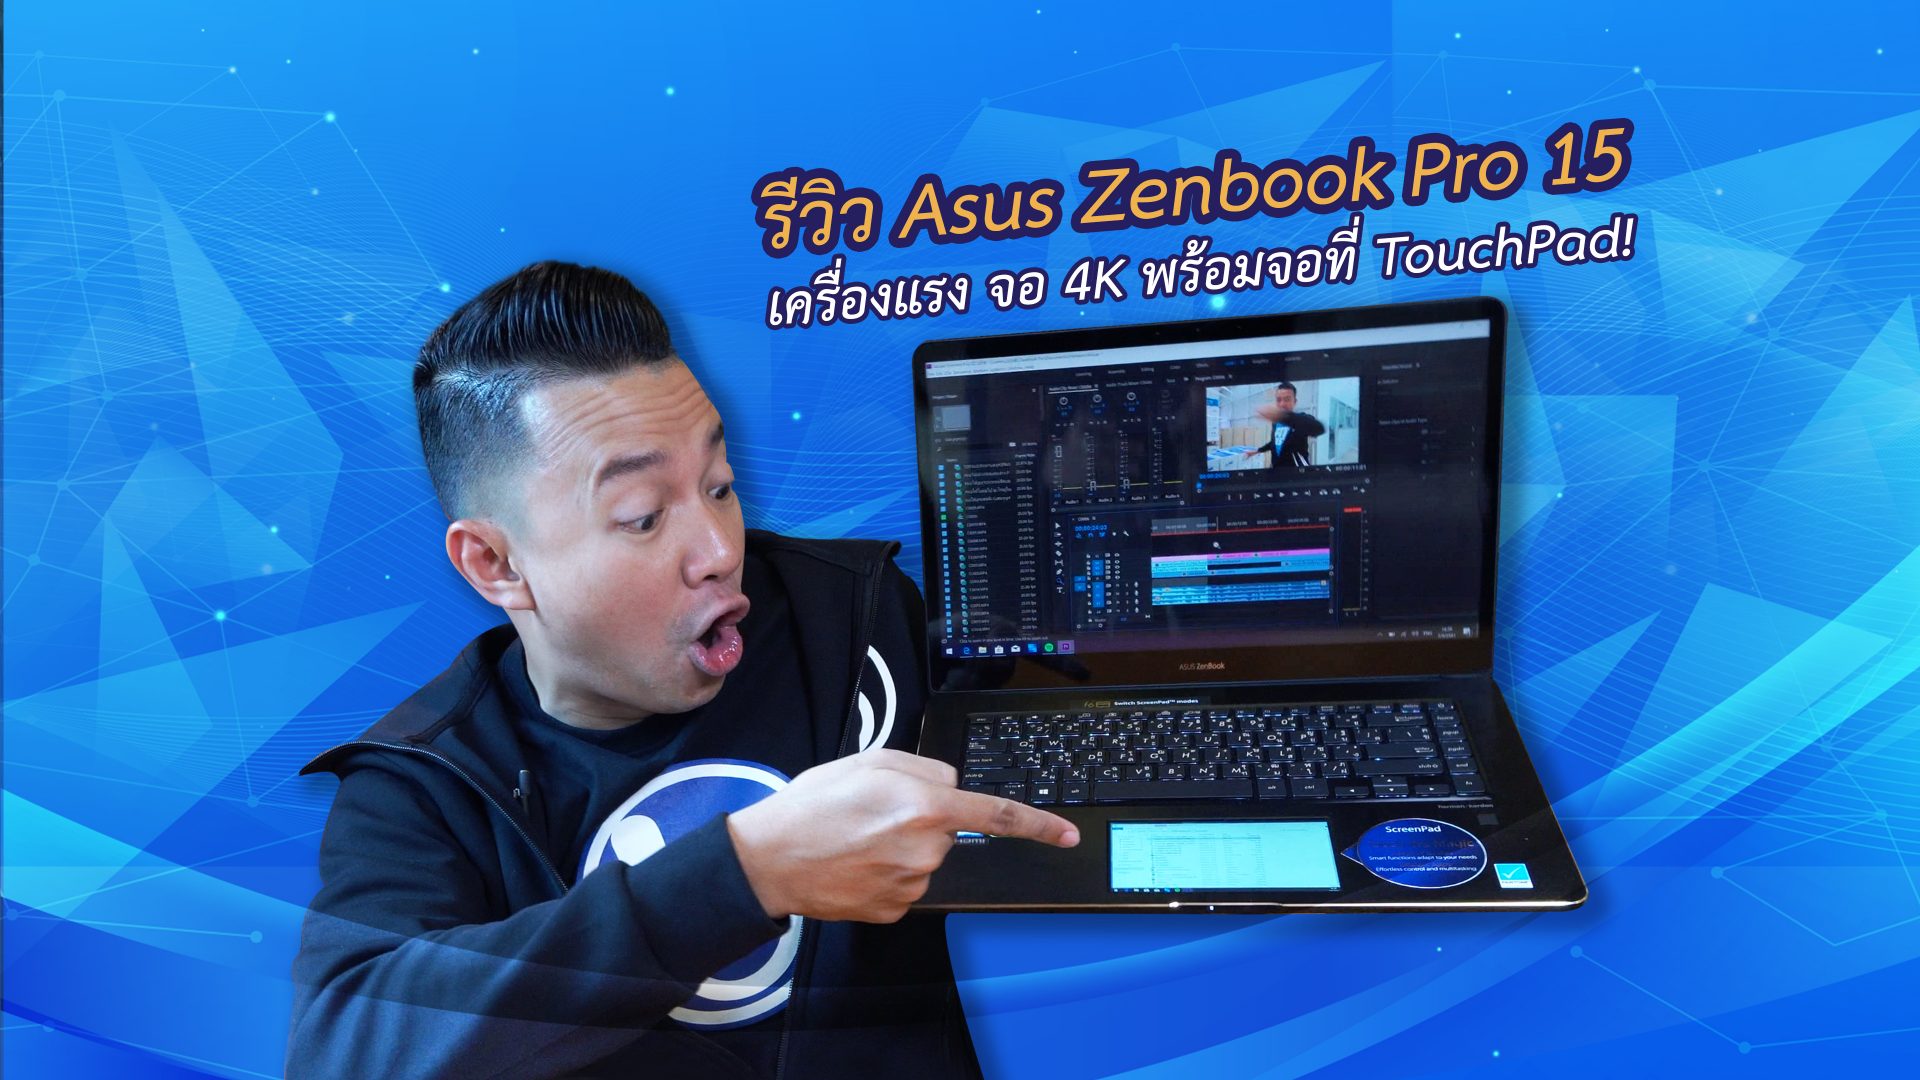 รีวิว #Asus #ZenBook Pro 15 UX580 สุดยอดโน้ตบุ๊กเพื่องานครีเอทีฟ!!